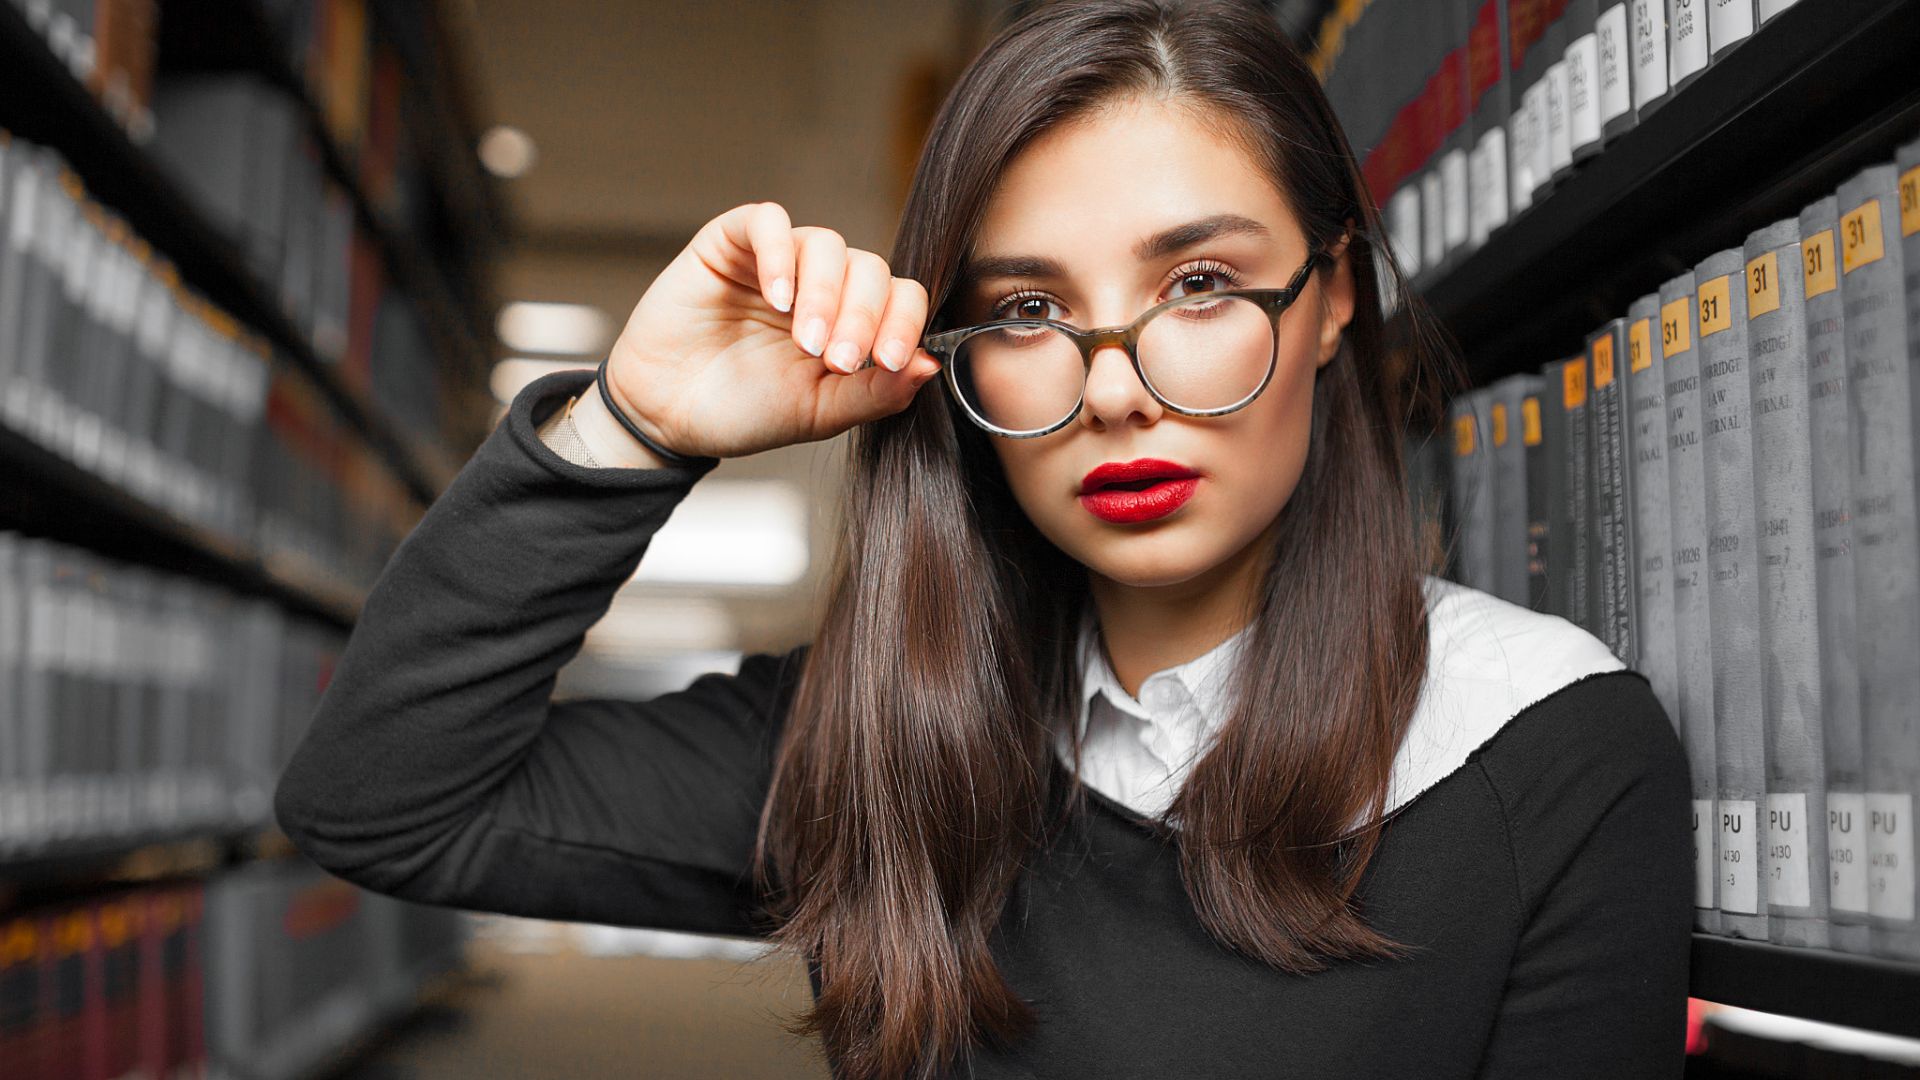 Wallpaper Library, girl model, glasses